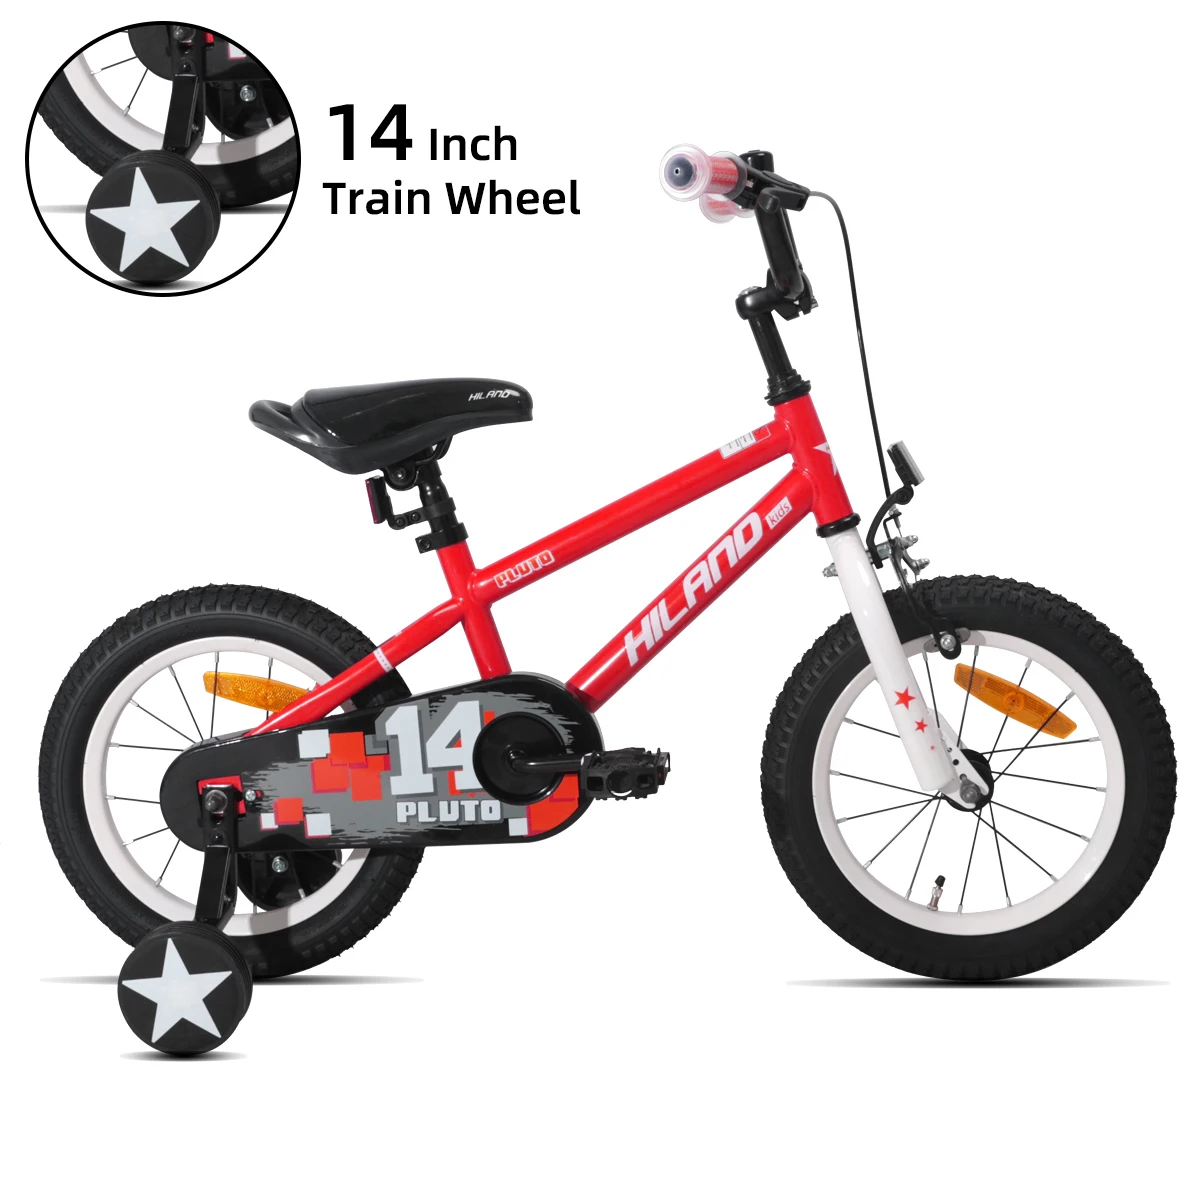 Bicicleta con rueda de entrenamiento para niños, bici con freno de pie, 14  y 16 pulgadas, 5 colores, envío gratis